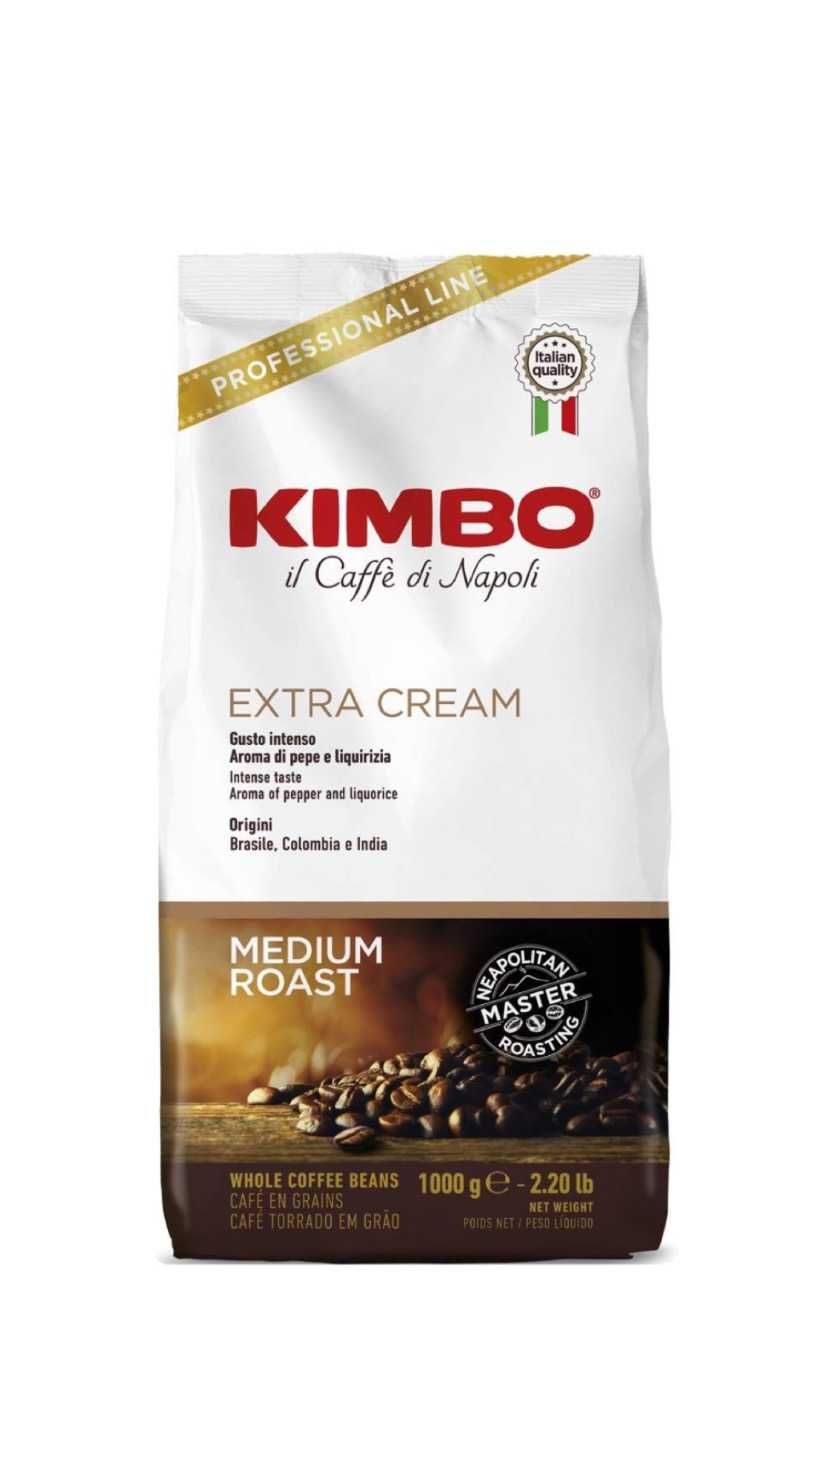 PROMO кафе KIMBO PROFESSIONAL LINE пакет зърна 1кг от ИТАЛИЯ видове